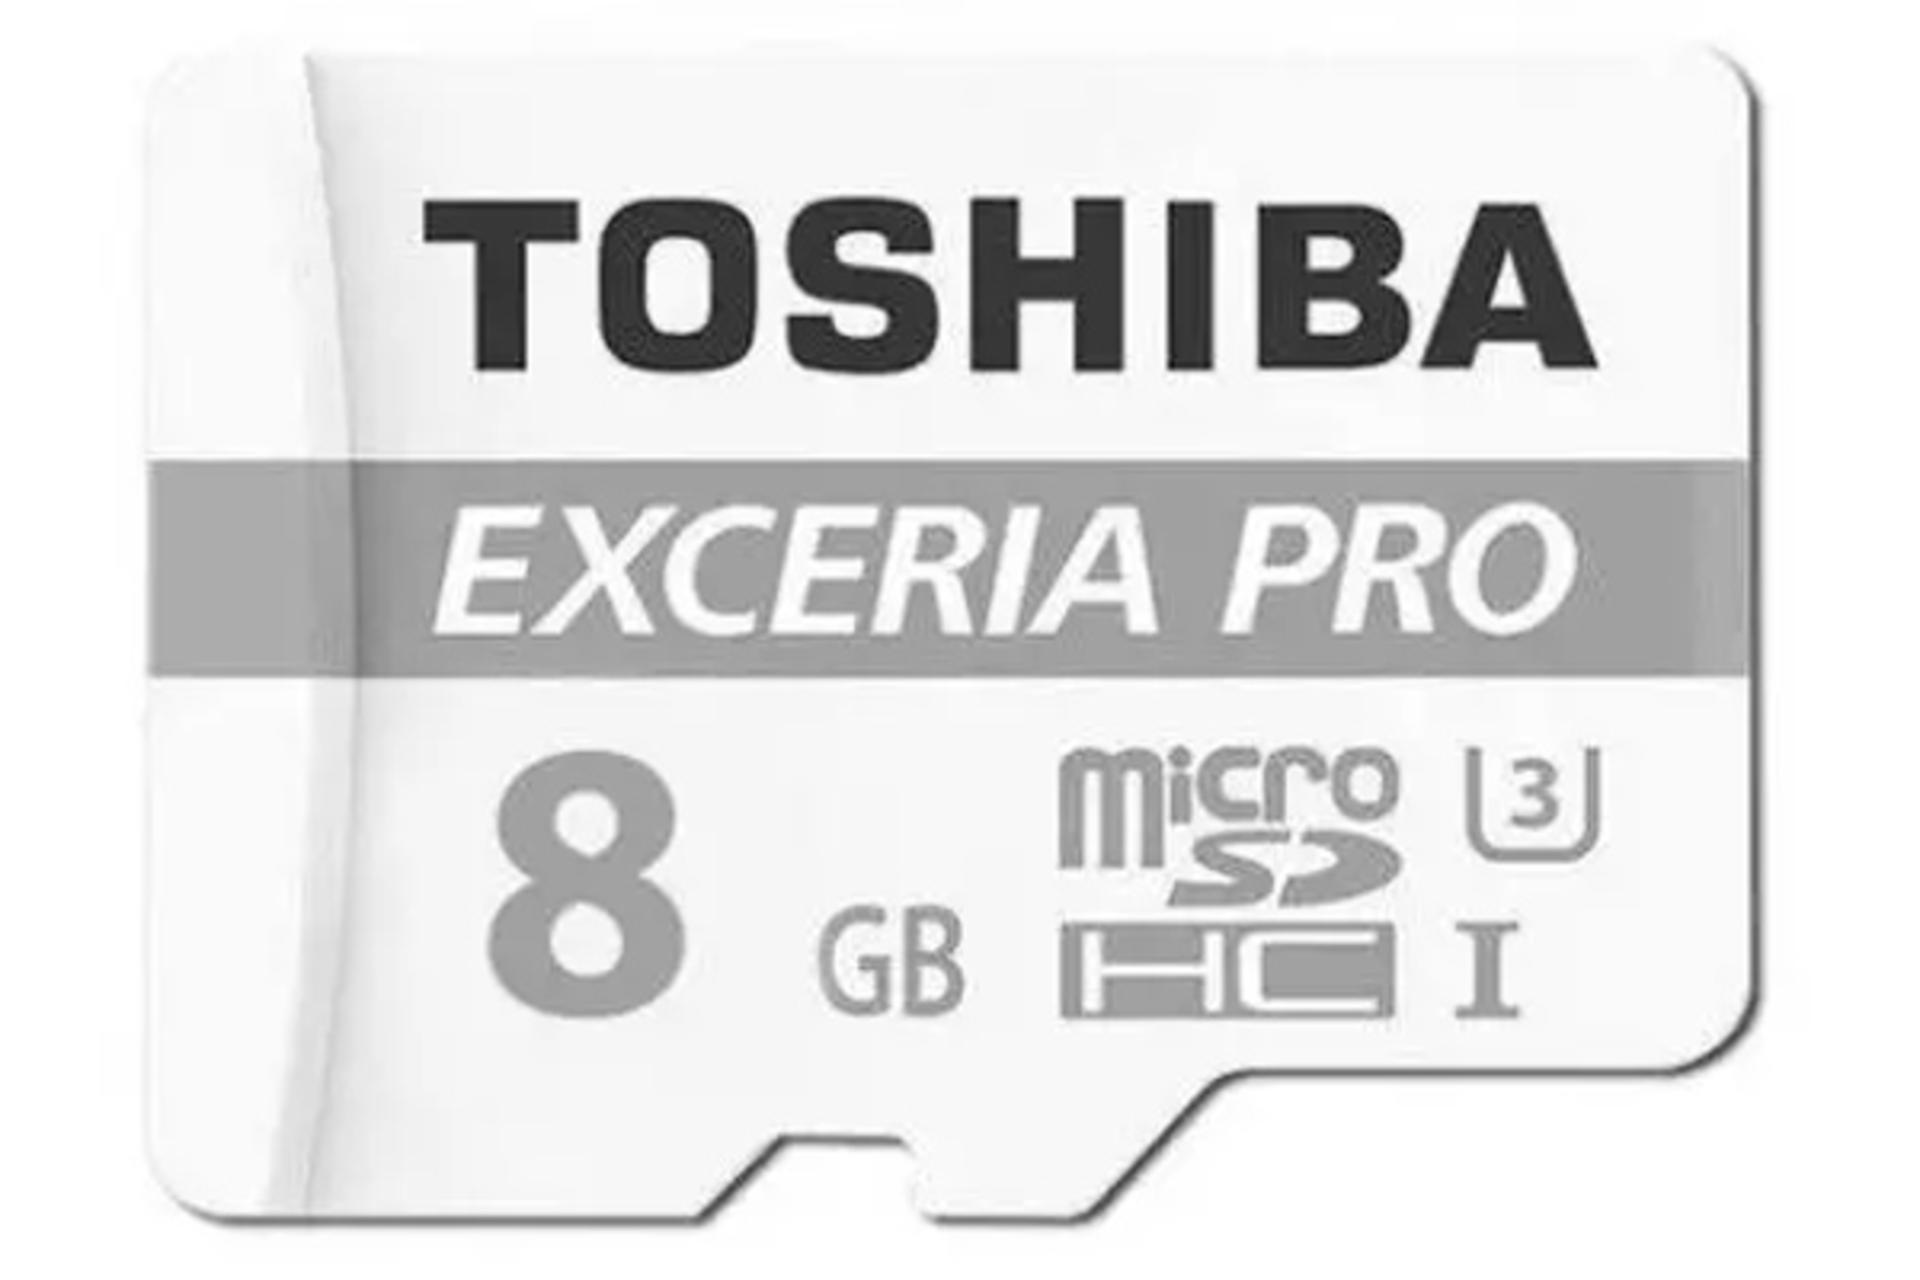 مرجع متخصصين ايران كارت حافظه توشيبا SDHC با ظرفيت 8 گيگابايت مدل Exceria Pro M401